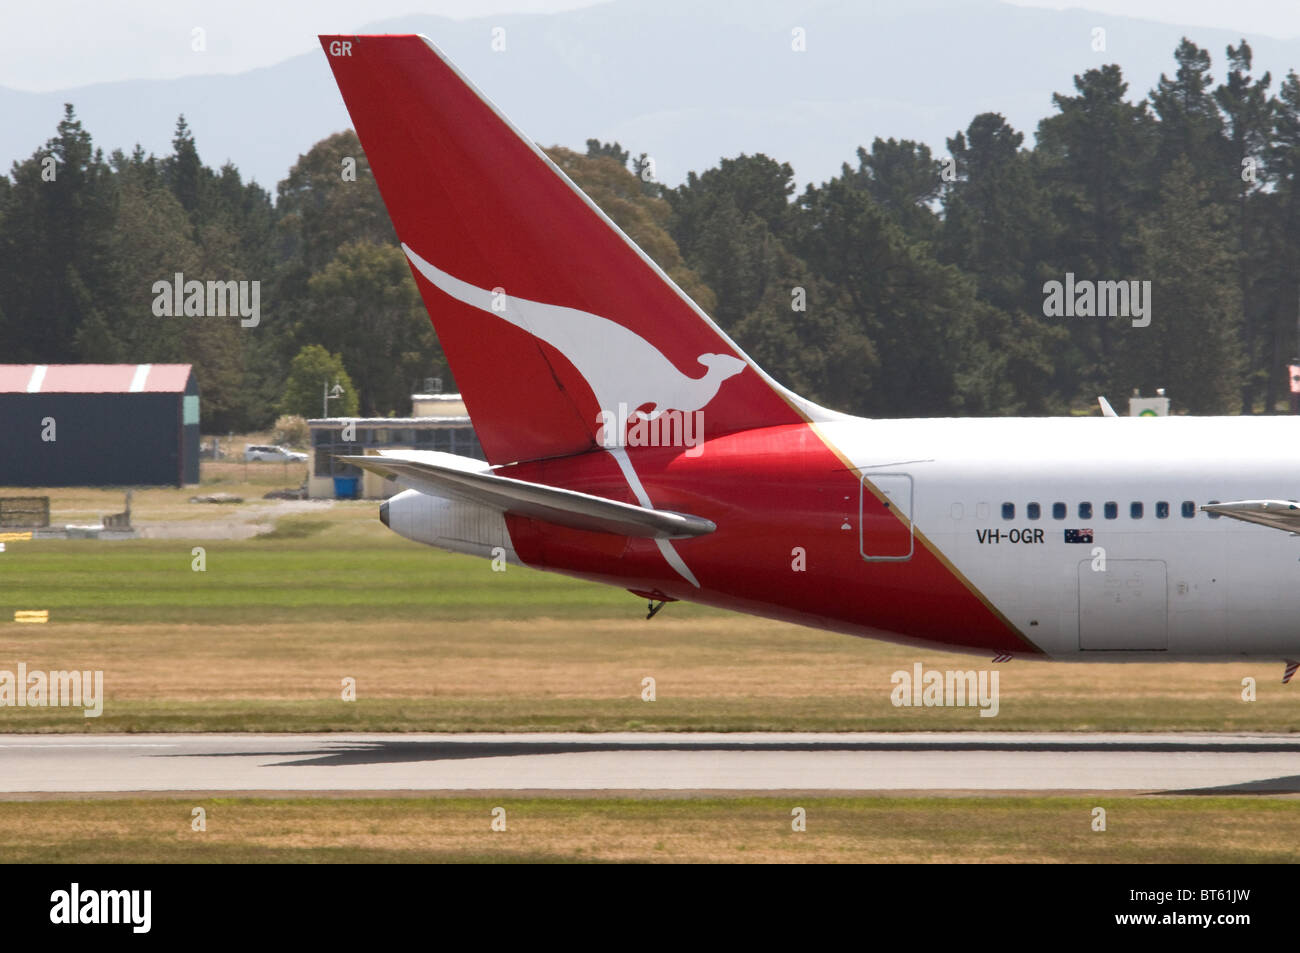 fyrretræ hjælpemotor harmonisk Page 2 - Qantas Logo High Resolution Stock Photography and Images - Alamy